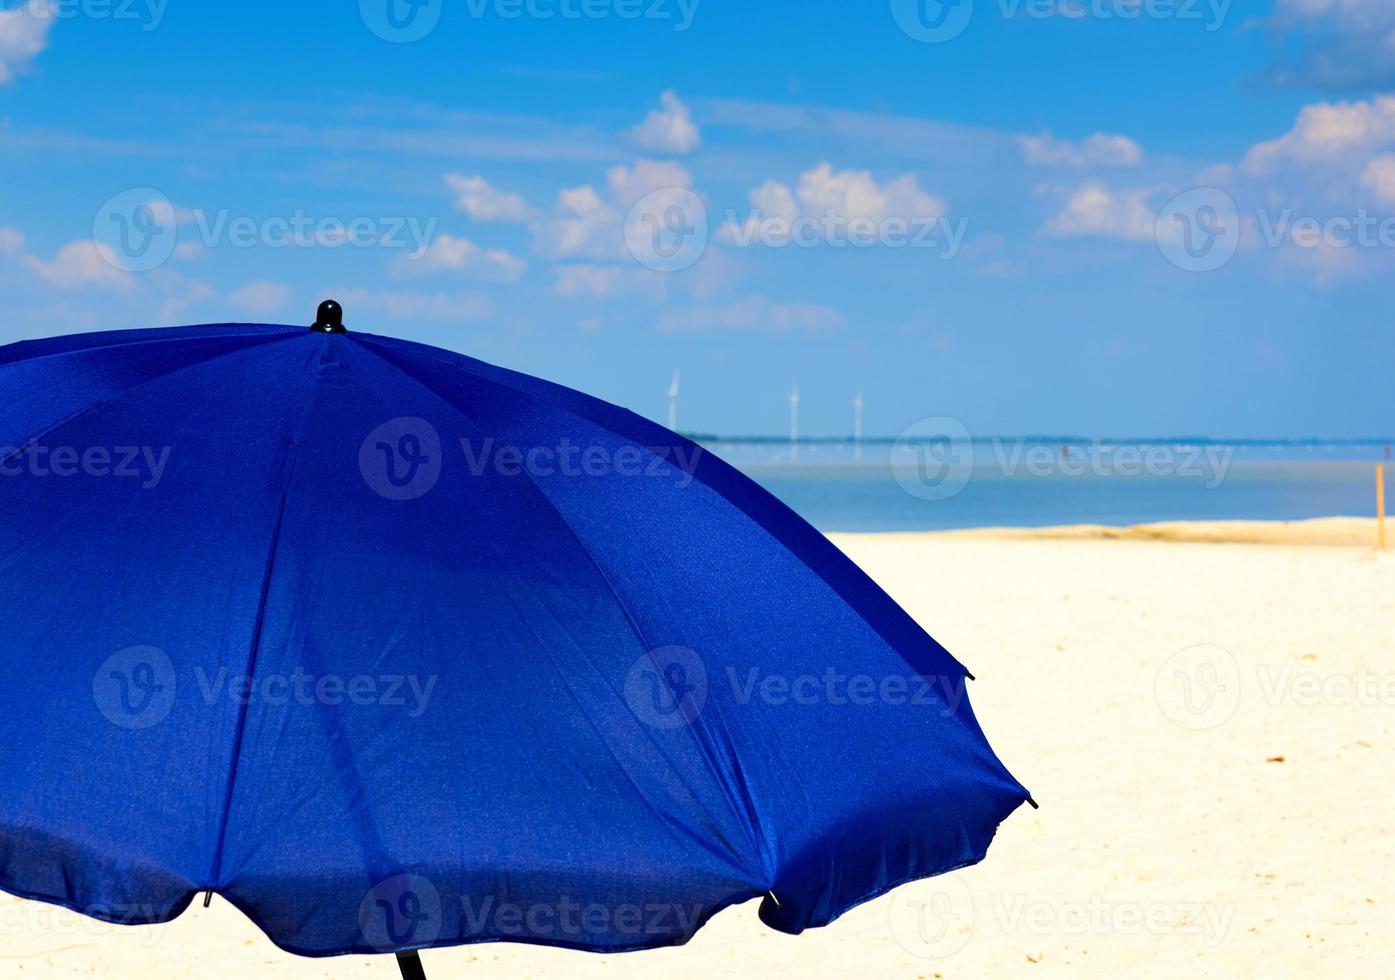 textilblauer regenschirm auf dem hintergrund des meeres und des himmels mit weißen wolken foto